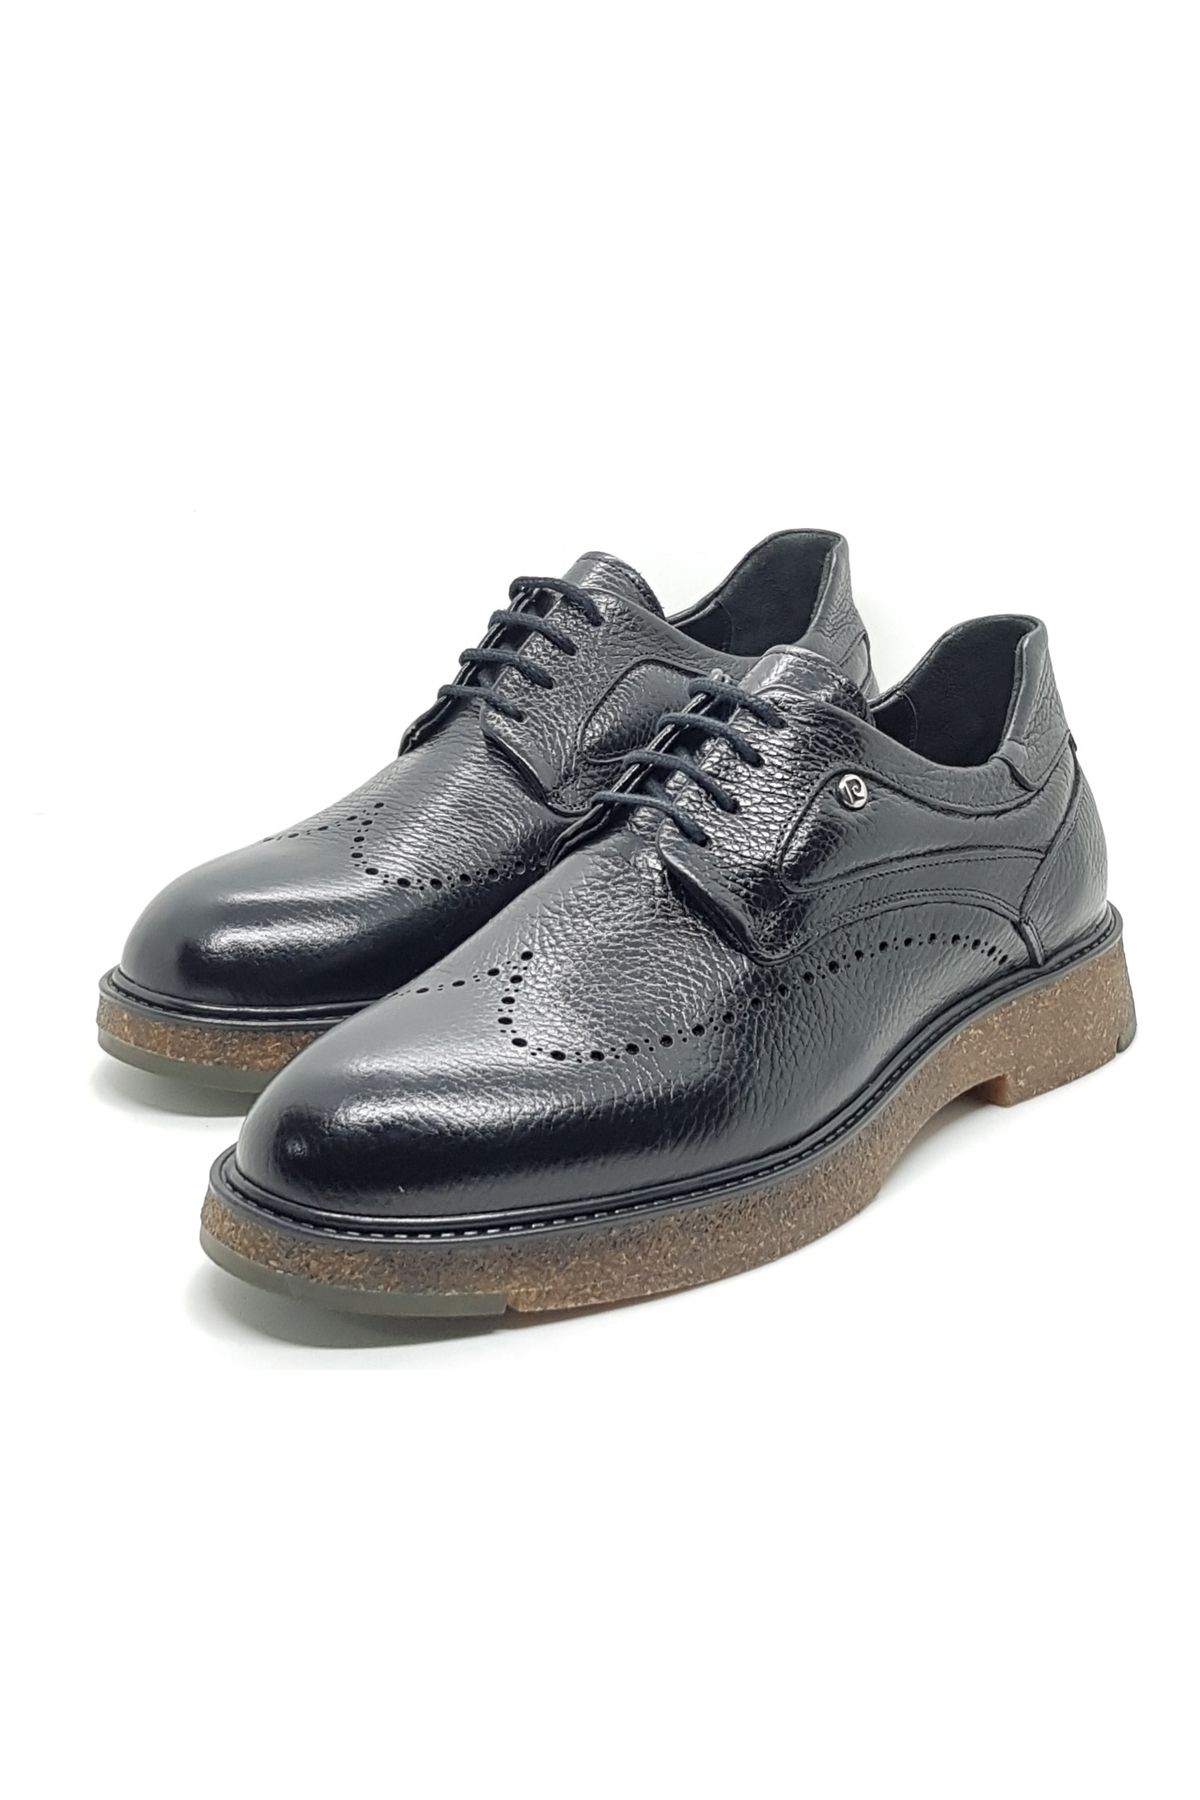 Pierre Cardin günlük erkek ayakkabı siyah renk kauçuk taban